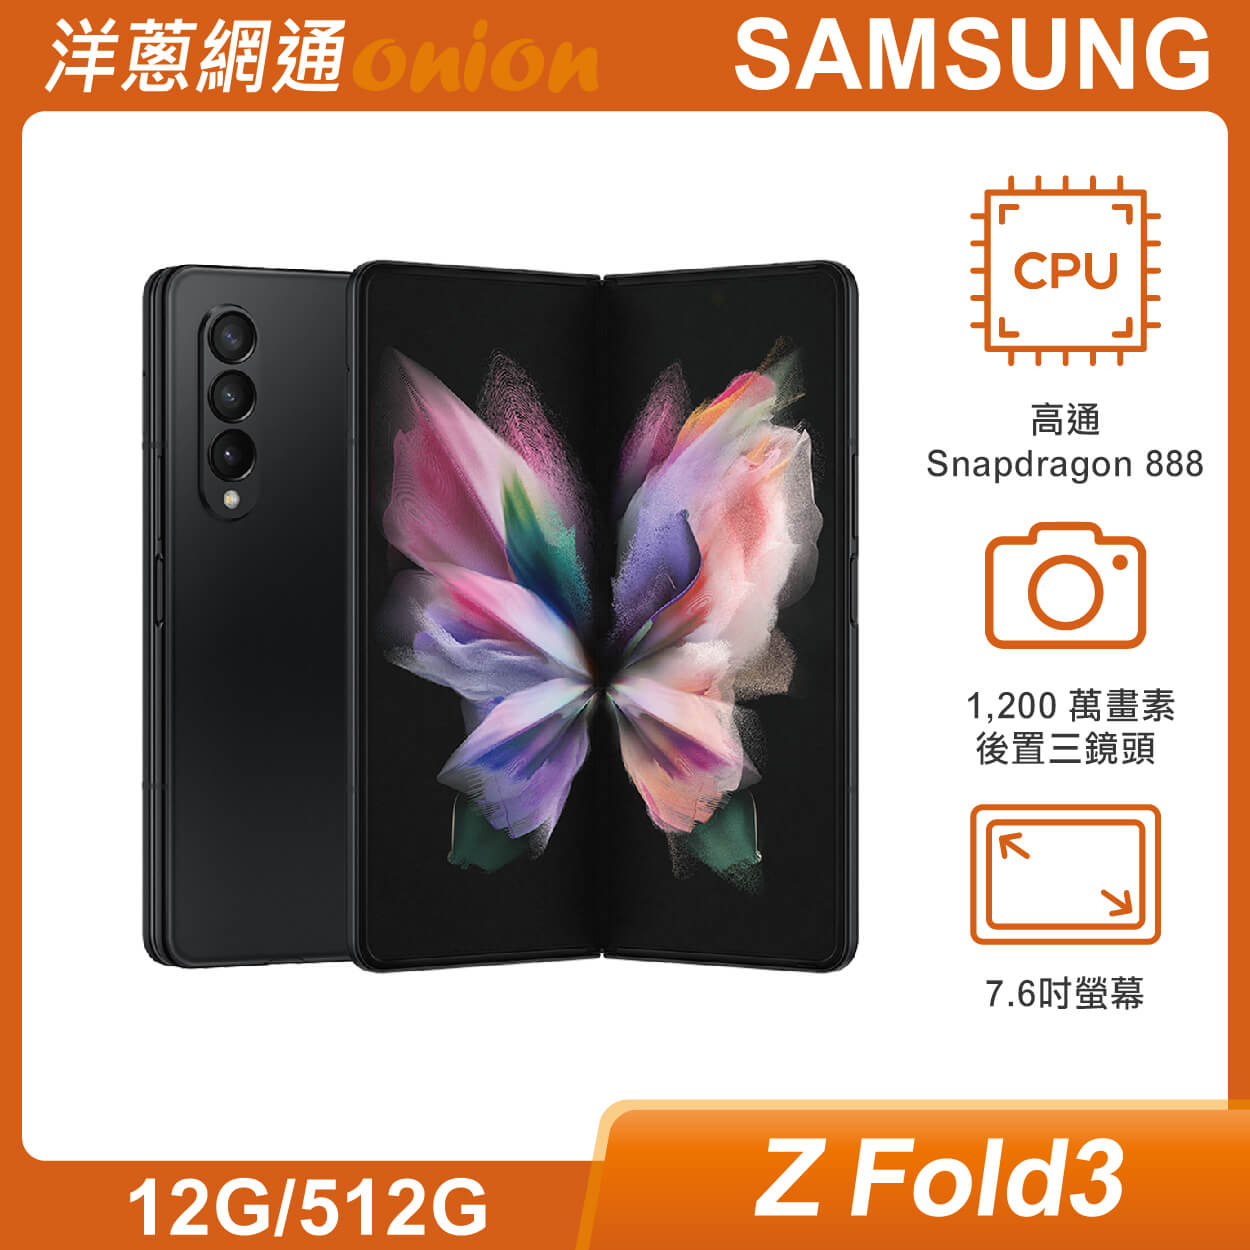 SAMSUNG三星 Galaxy Z Fold3 5G (12G/512G) 